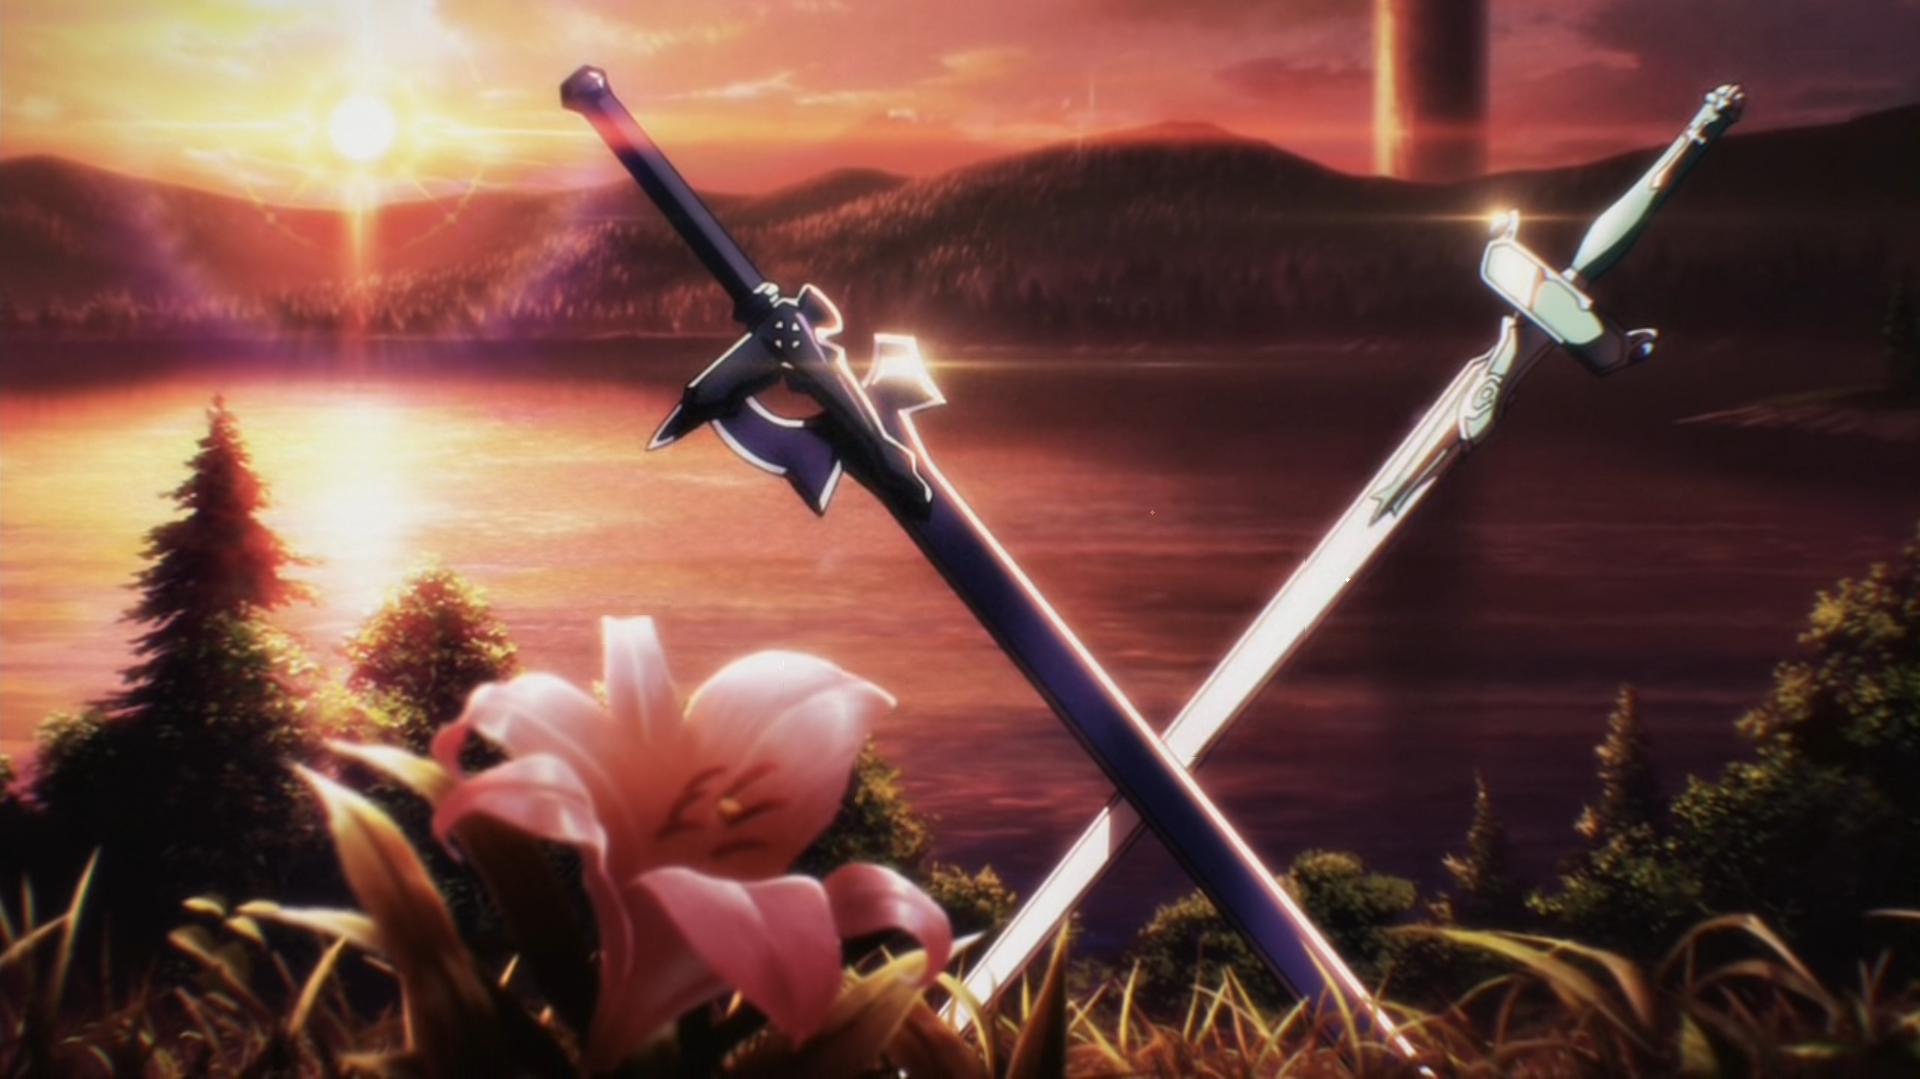 lake, sunset, flower, sword art online, sword, anime cellphone